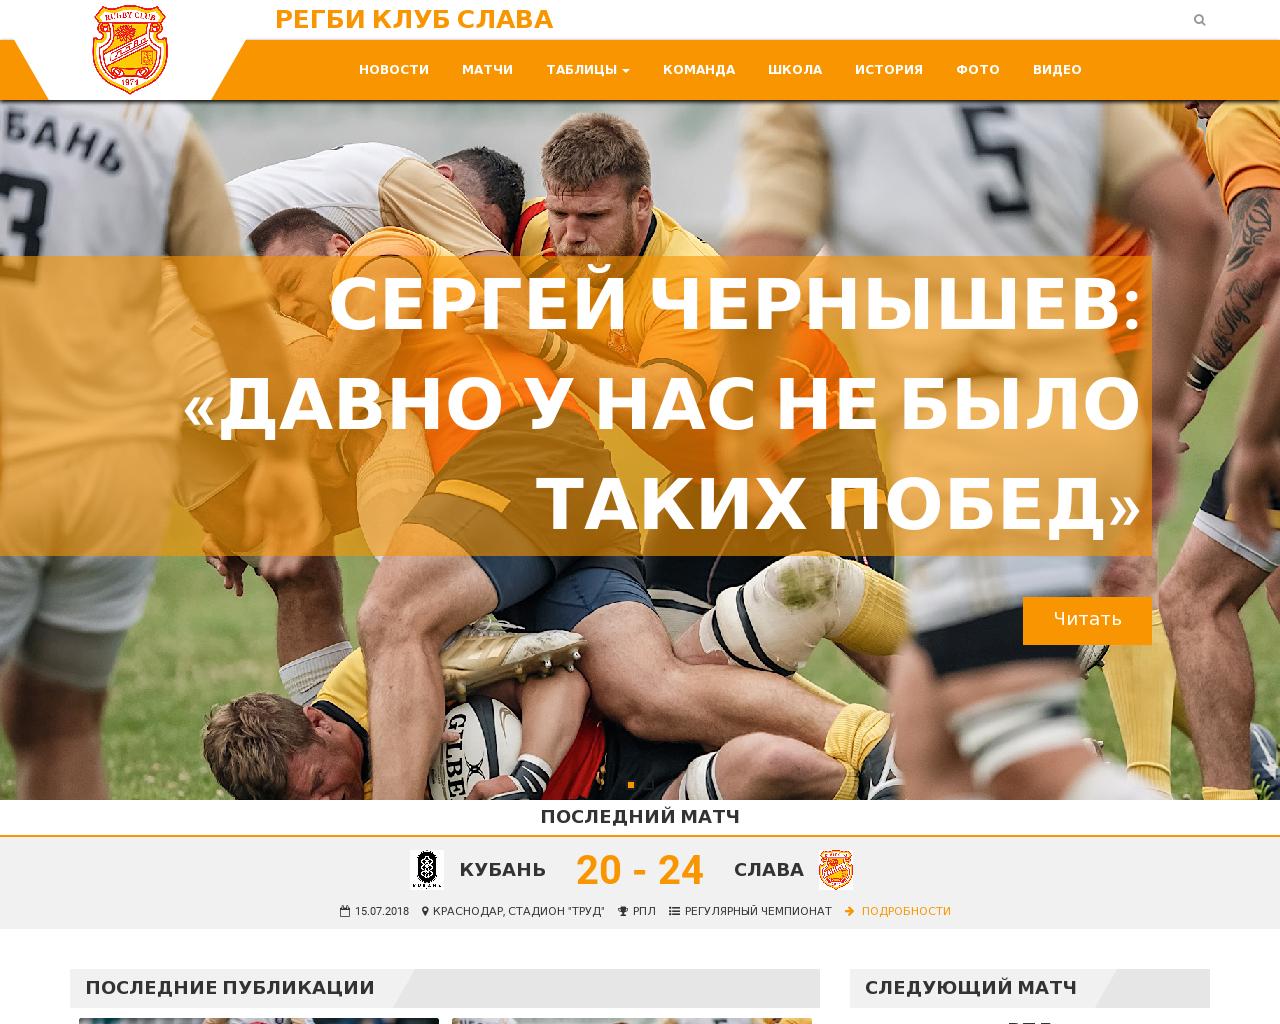 Изображение сайта rugby-slava.ru в разрешении 1280x1024